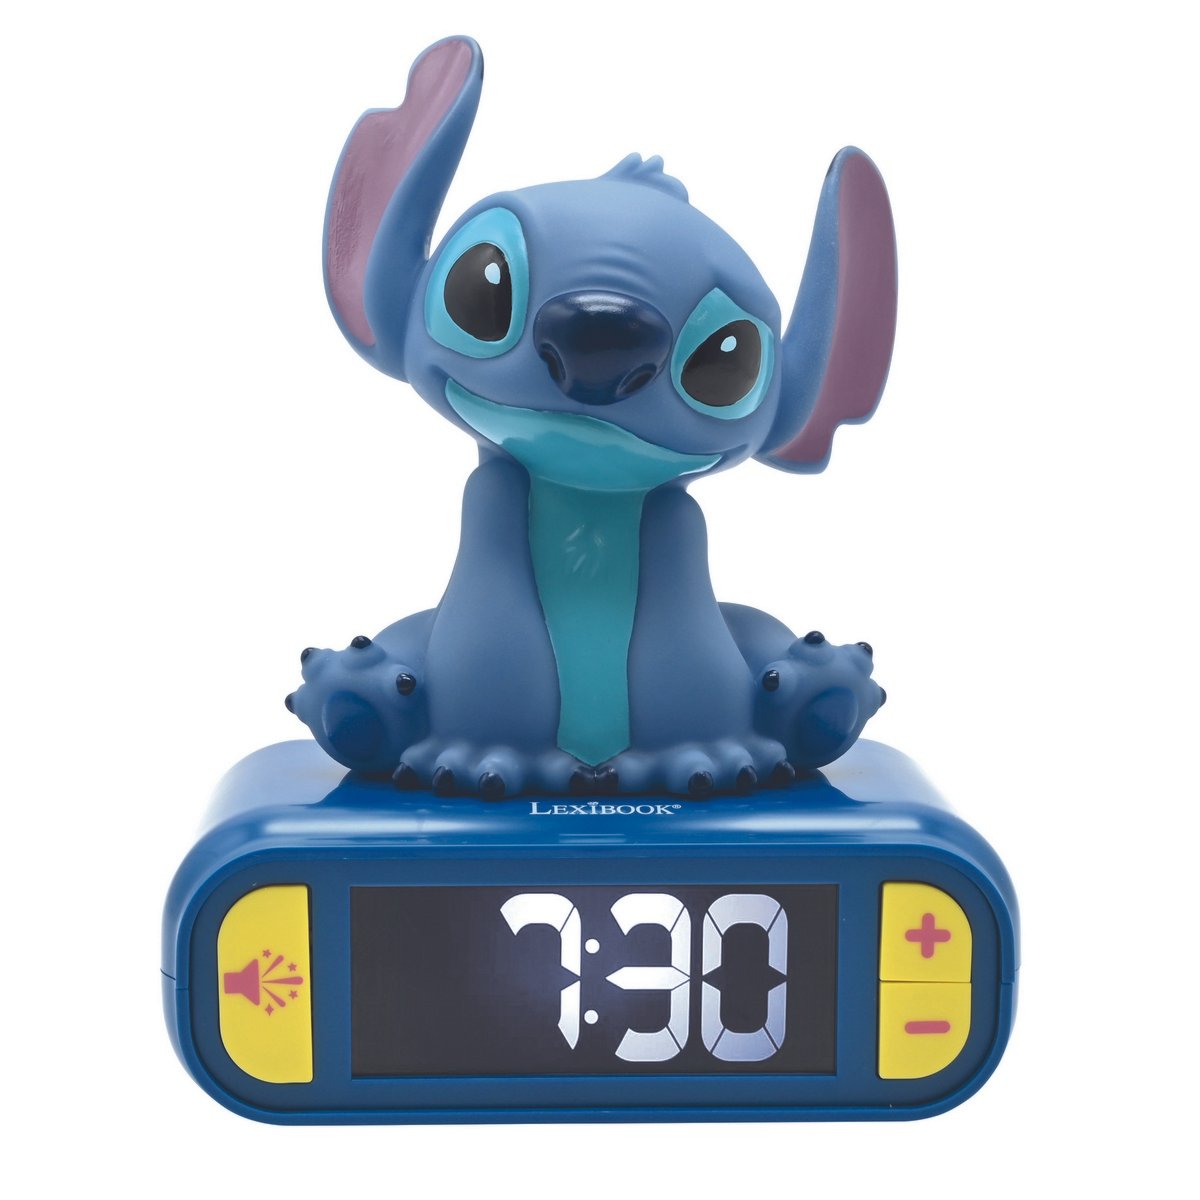 R-timer Stitch Réveil numérique avec température - Grande